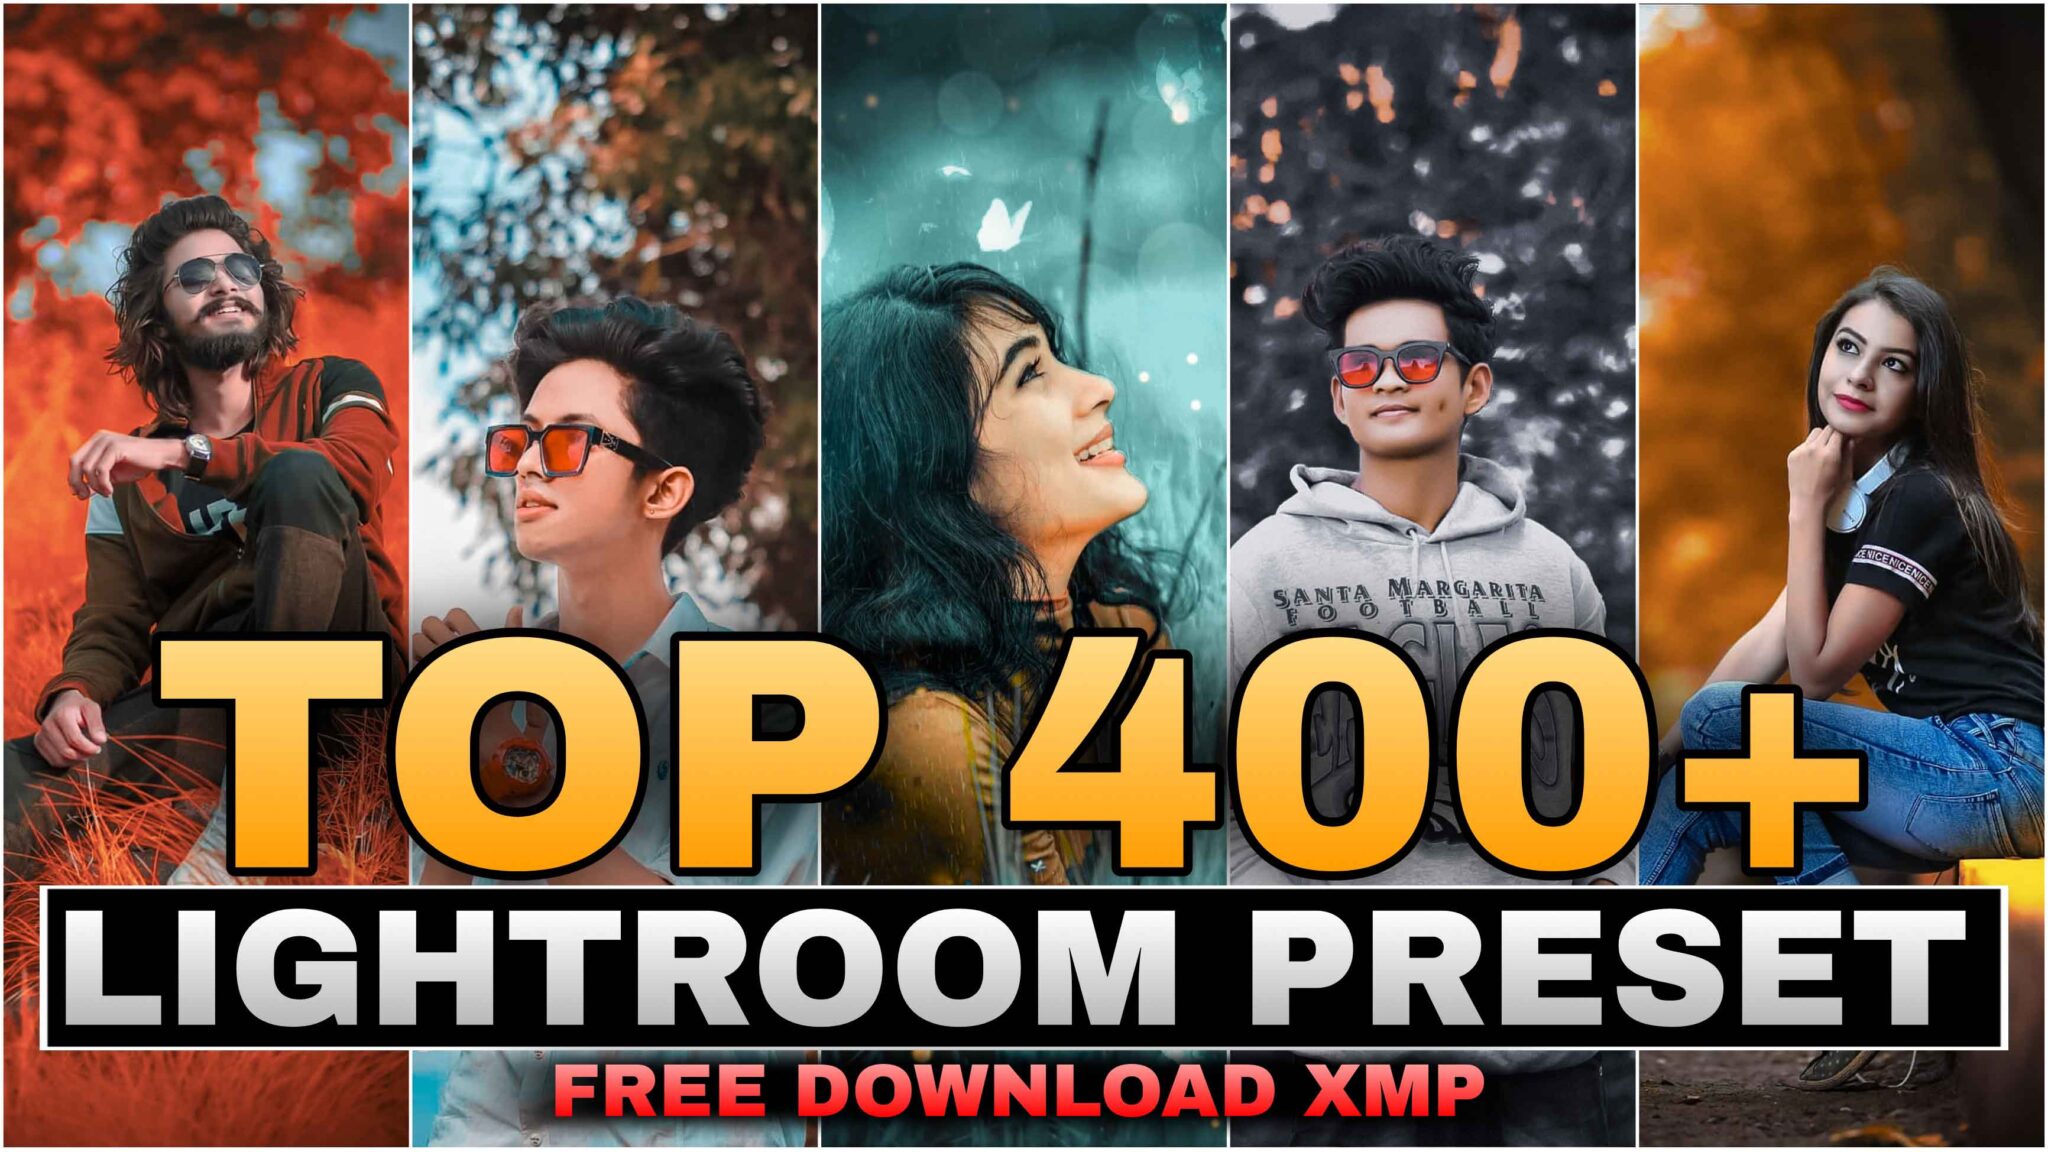 lightroom presets 400+ best free download for adobe lightroom